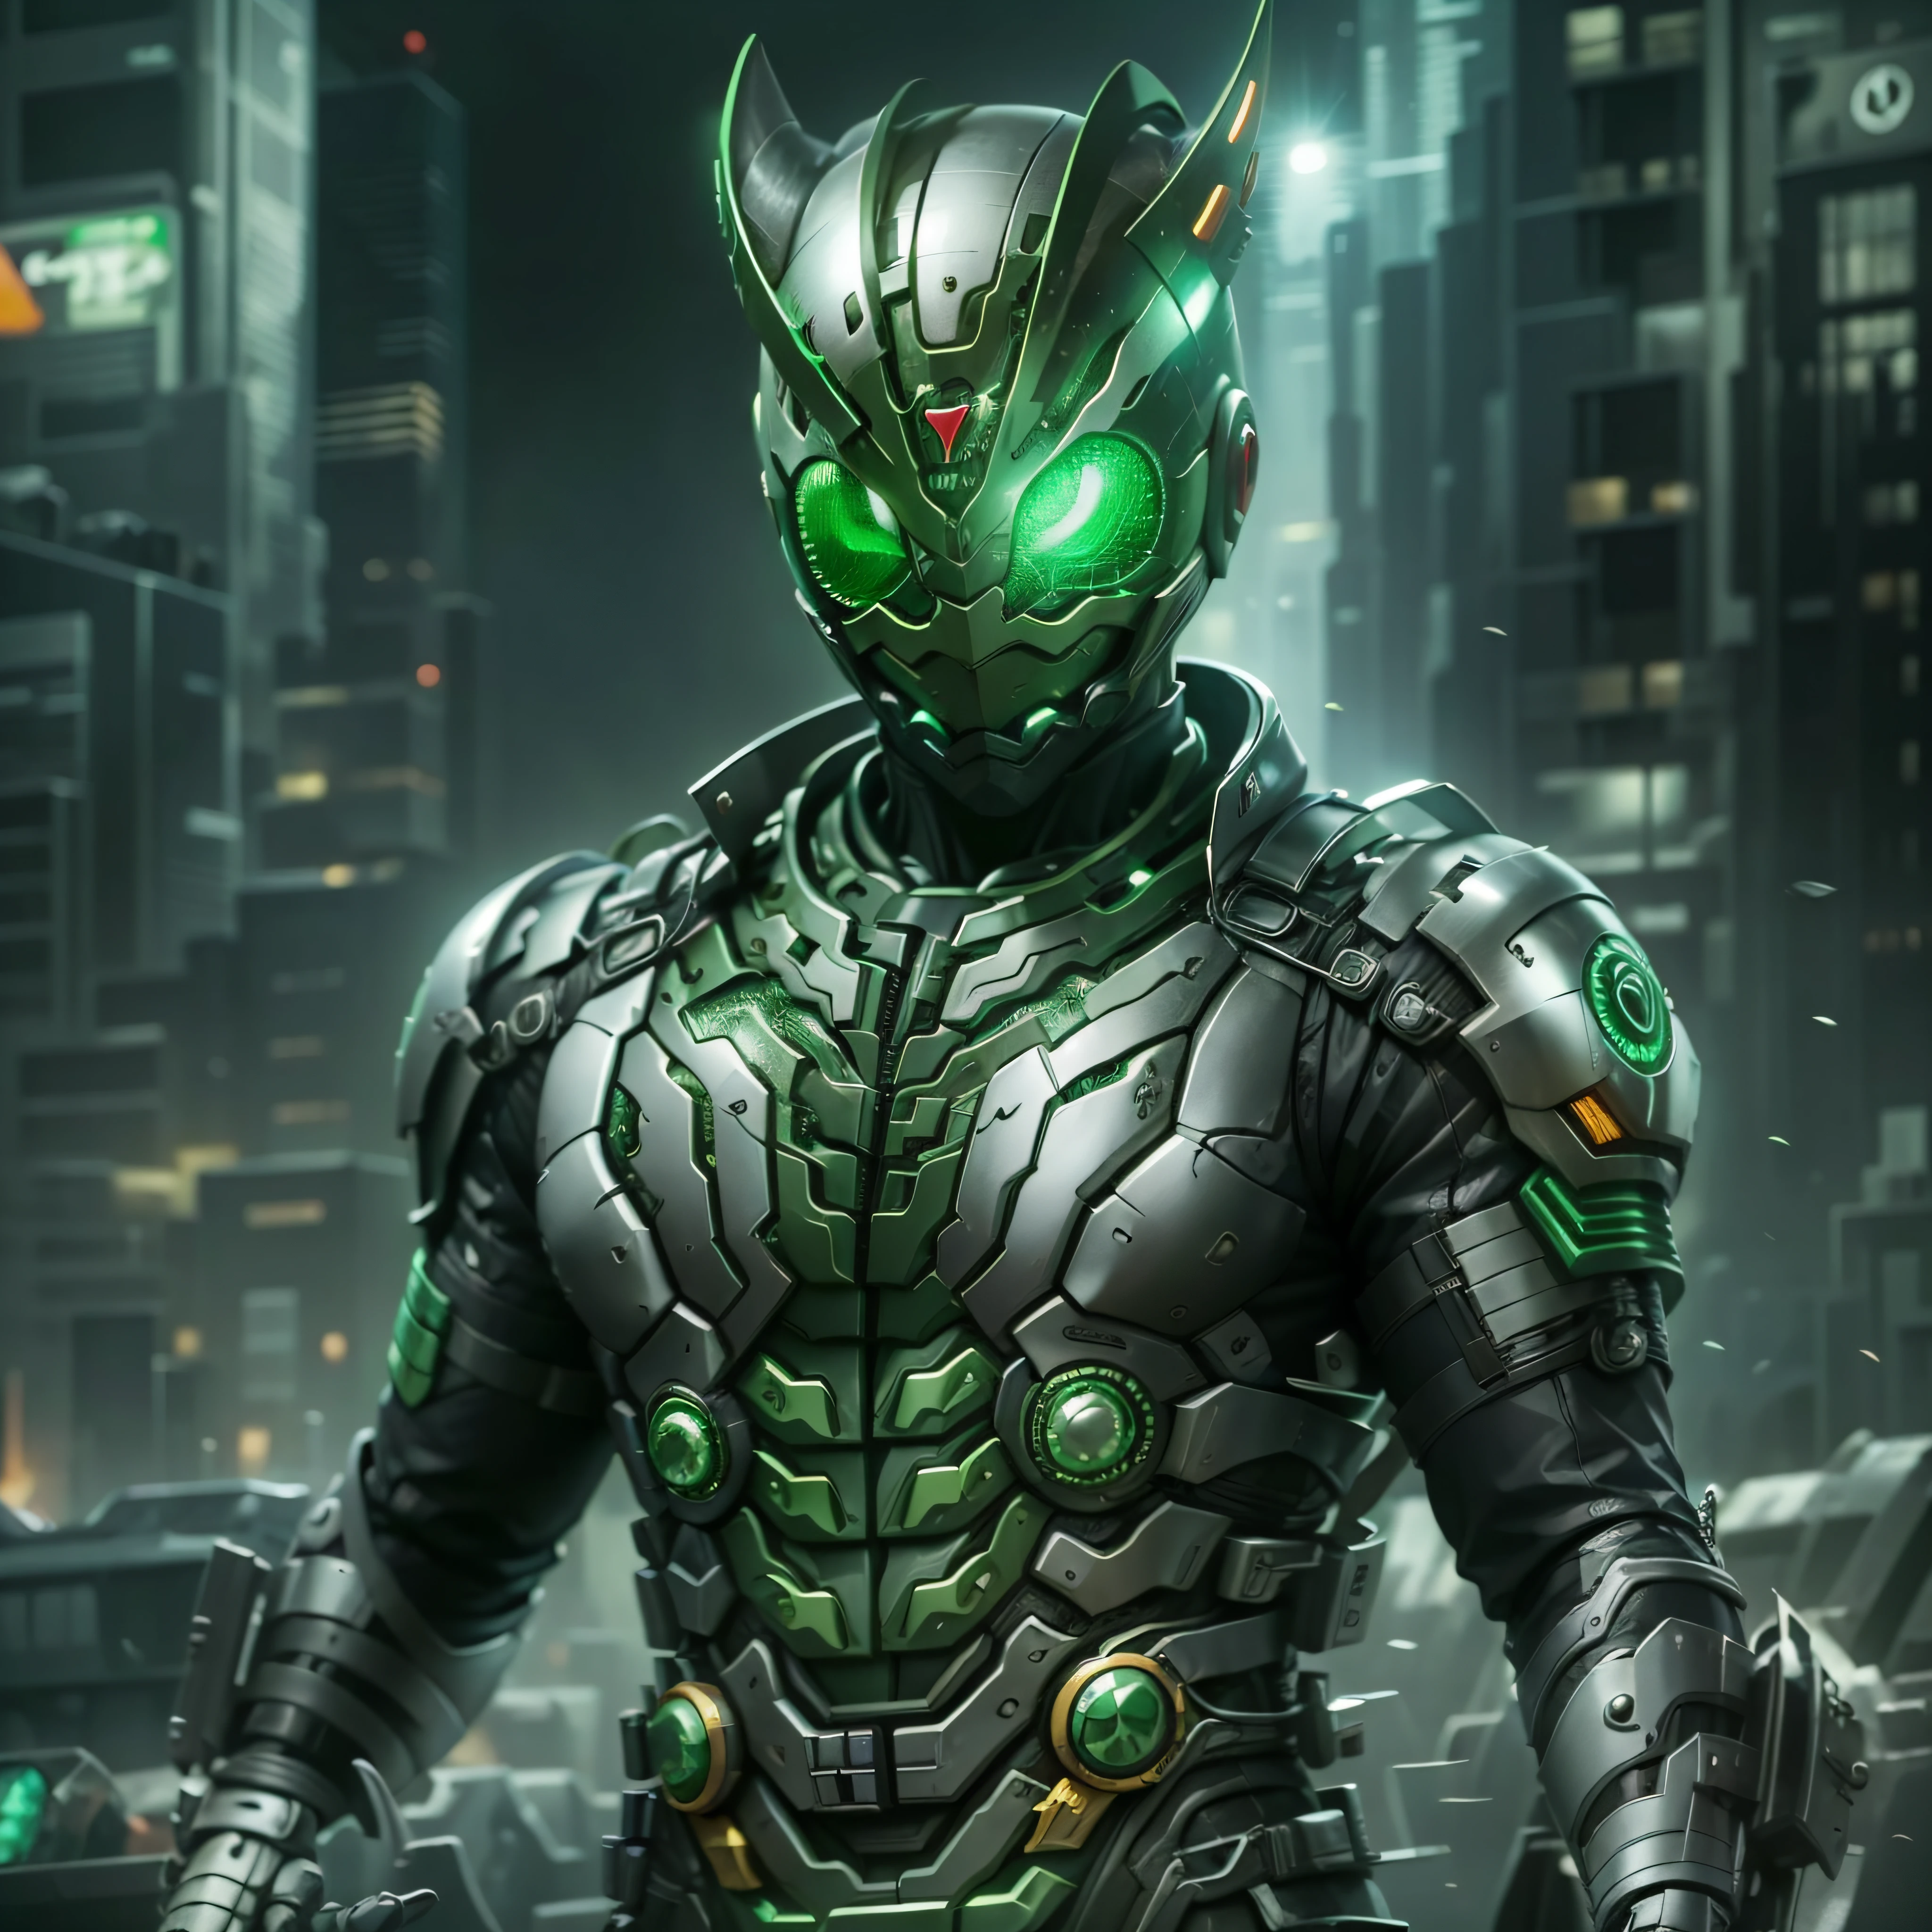 Cavaleiro Kamen Verde, Armadura prateada, roupa cinzenta e preta, TechSuit verde, agente secreto, Robô